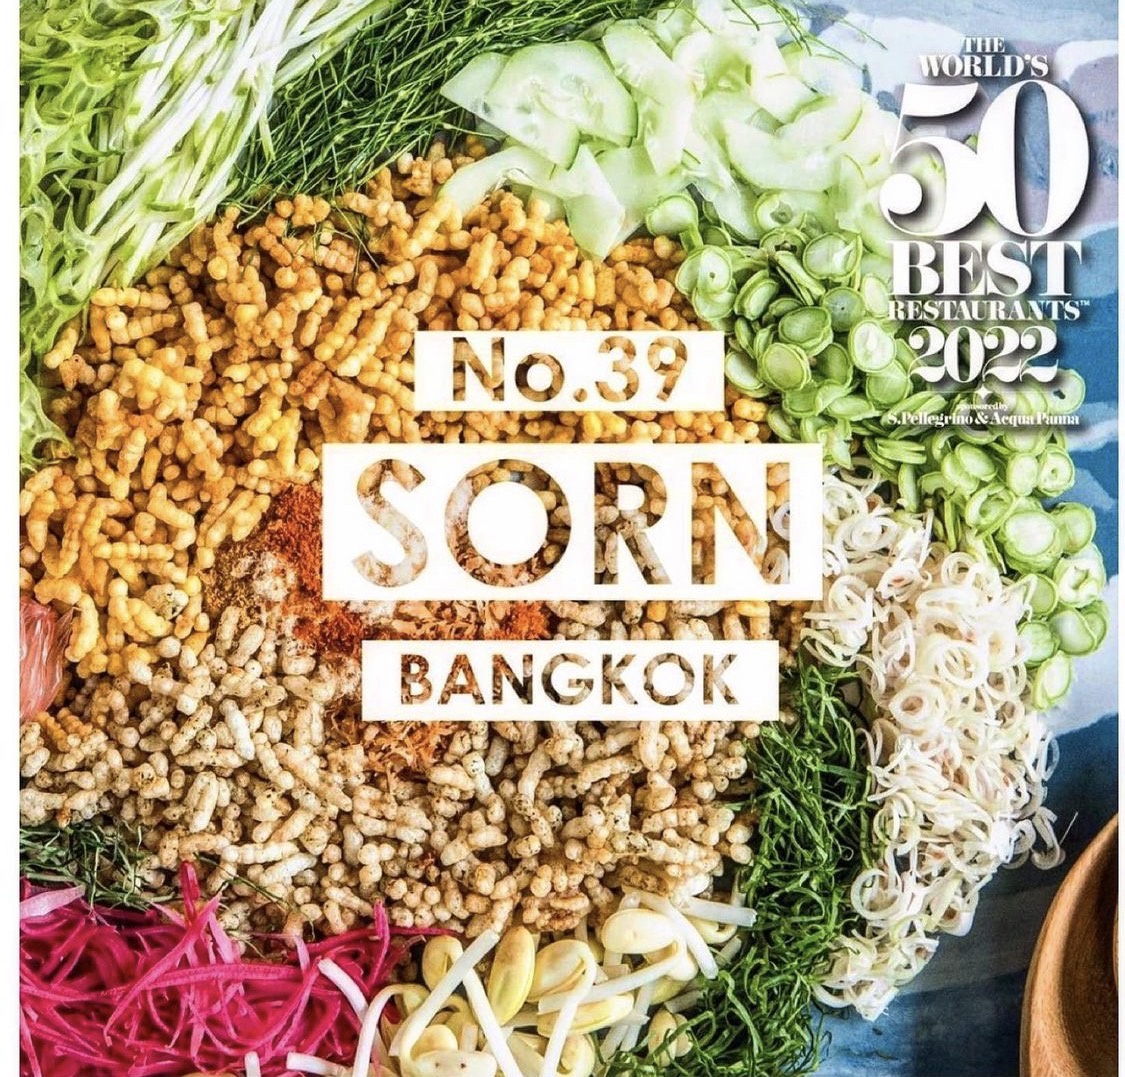 สุดยอด!! ศรณ์ (SORN) ร้านอาหารปักษ์ใต้ คนไทยคนแรกในประวัติศาสตร์ 20 ปี ของ The World's 50 Best Restaurants 2022 ที่คว้าอันดับที่ 39